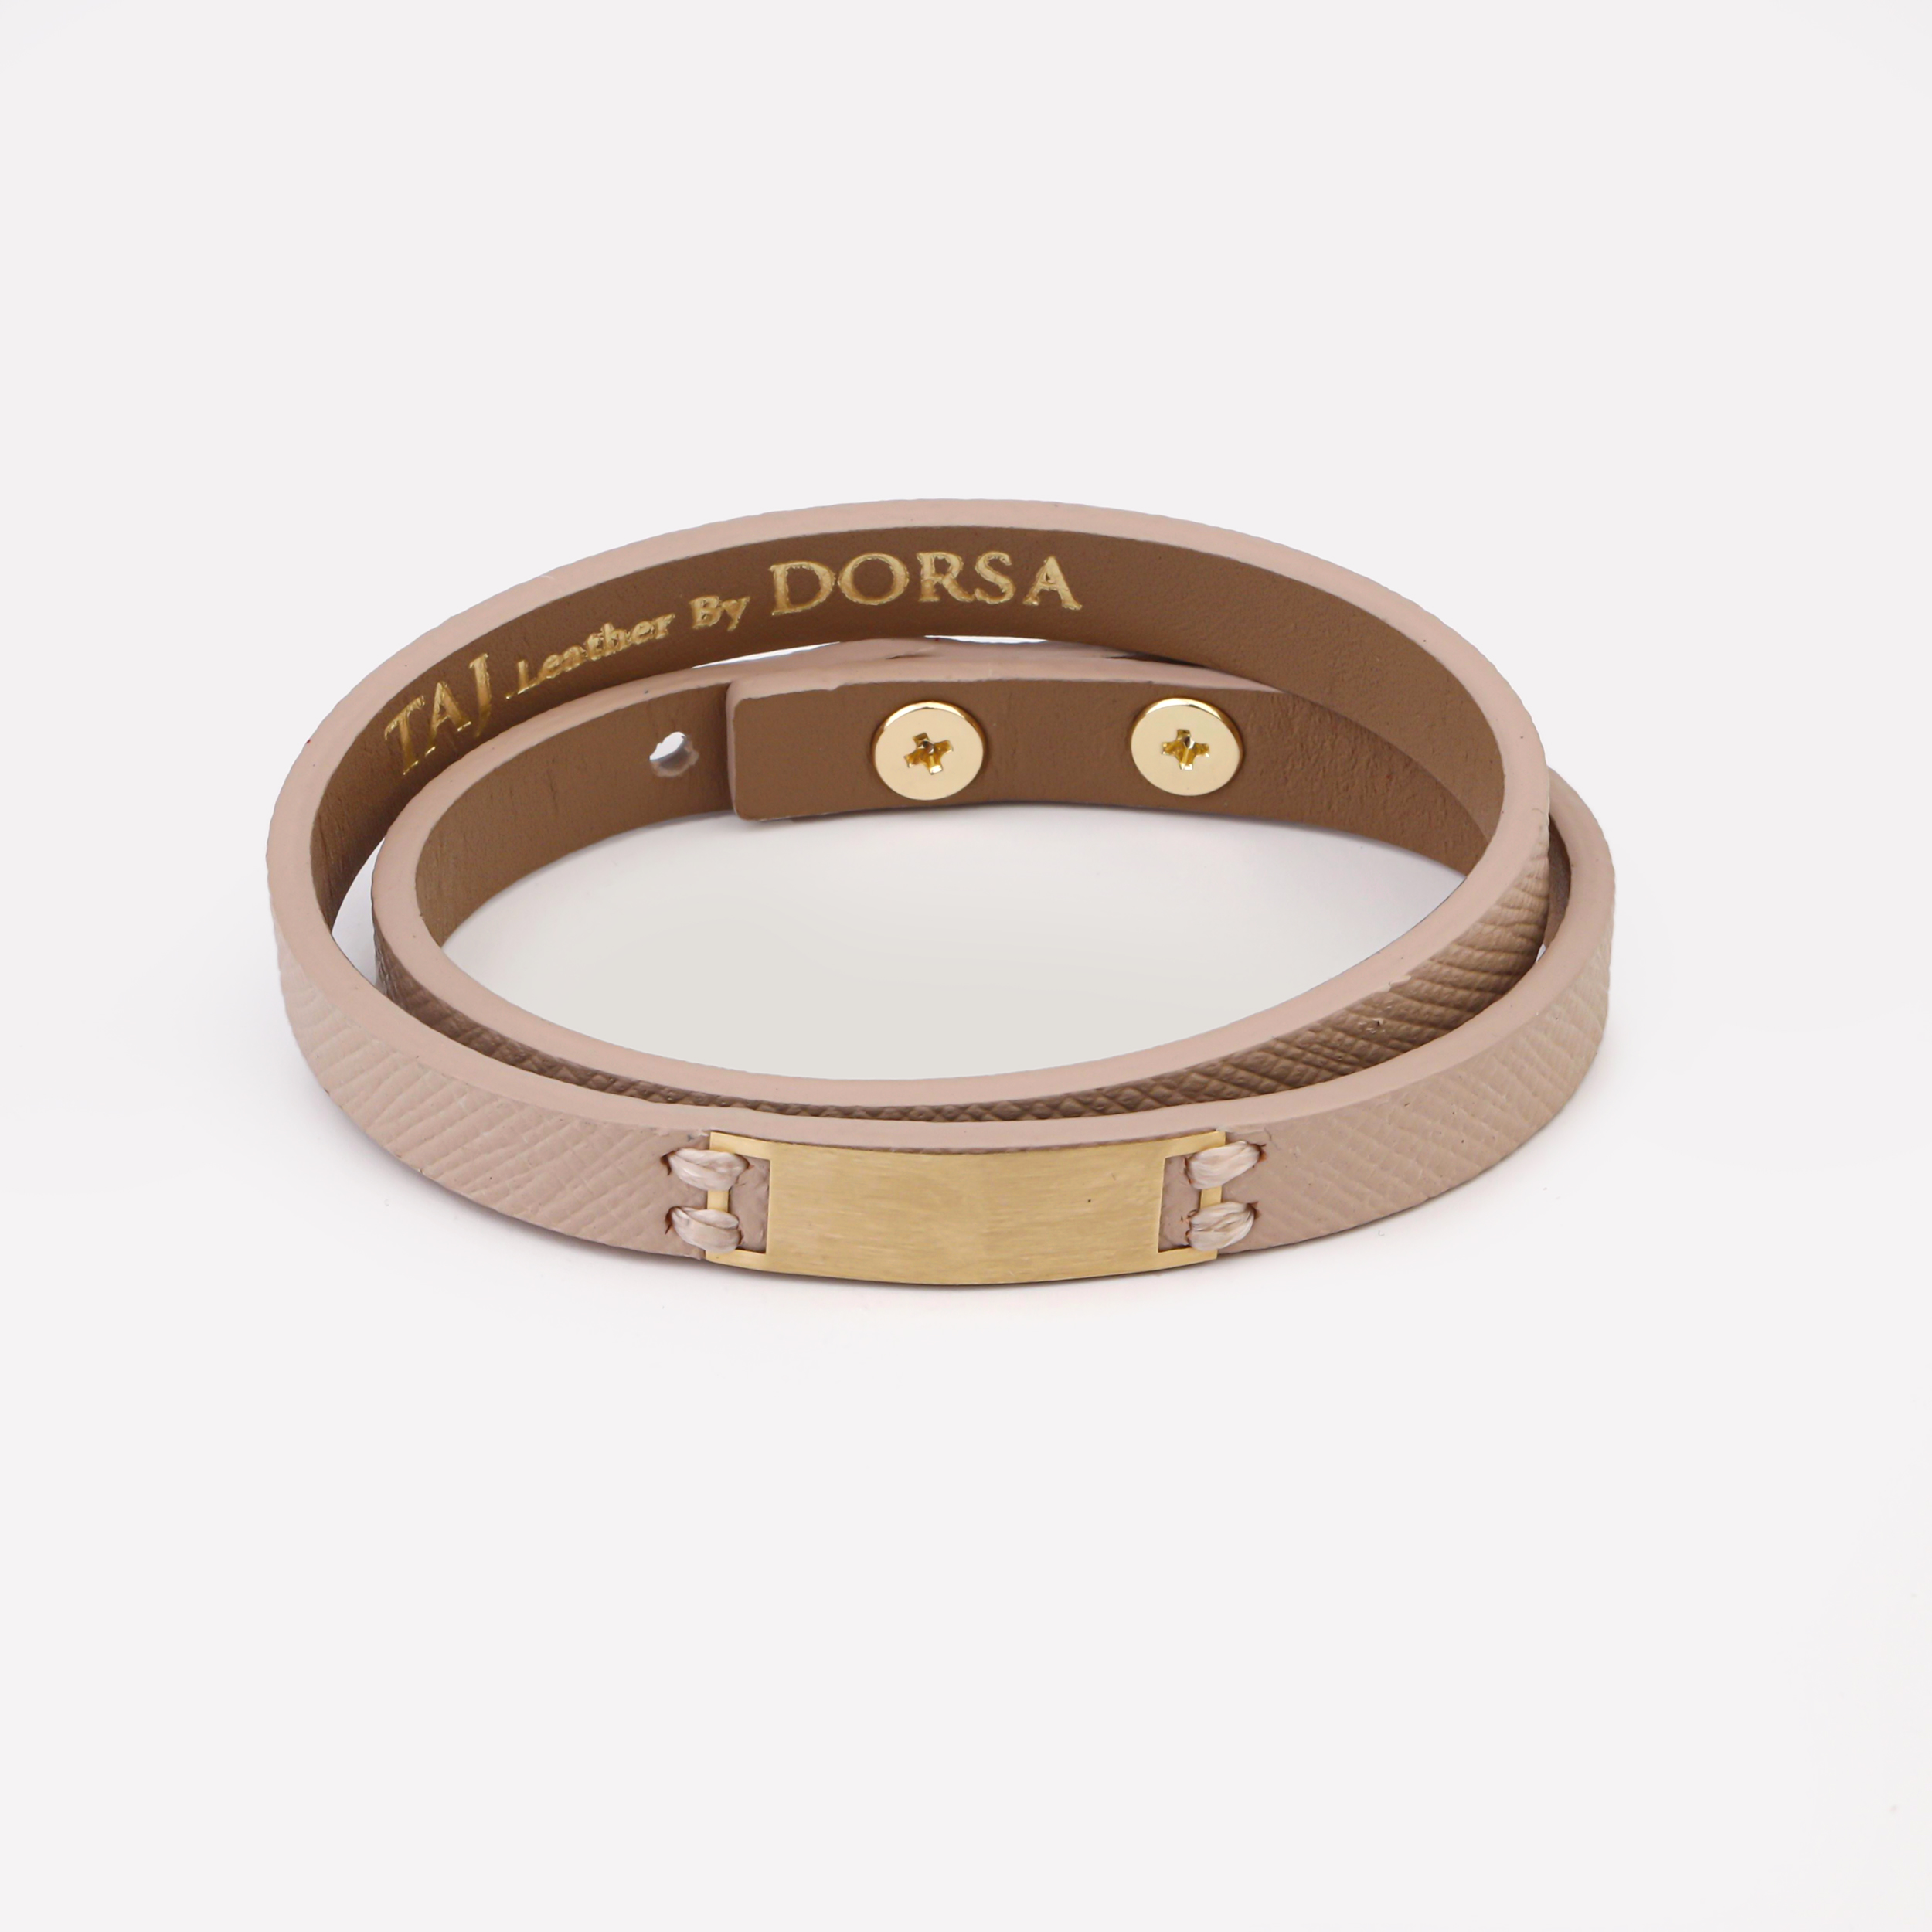 دستبند طلا 18 عیار زنانه تاج مدل G290